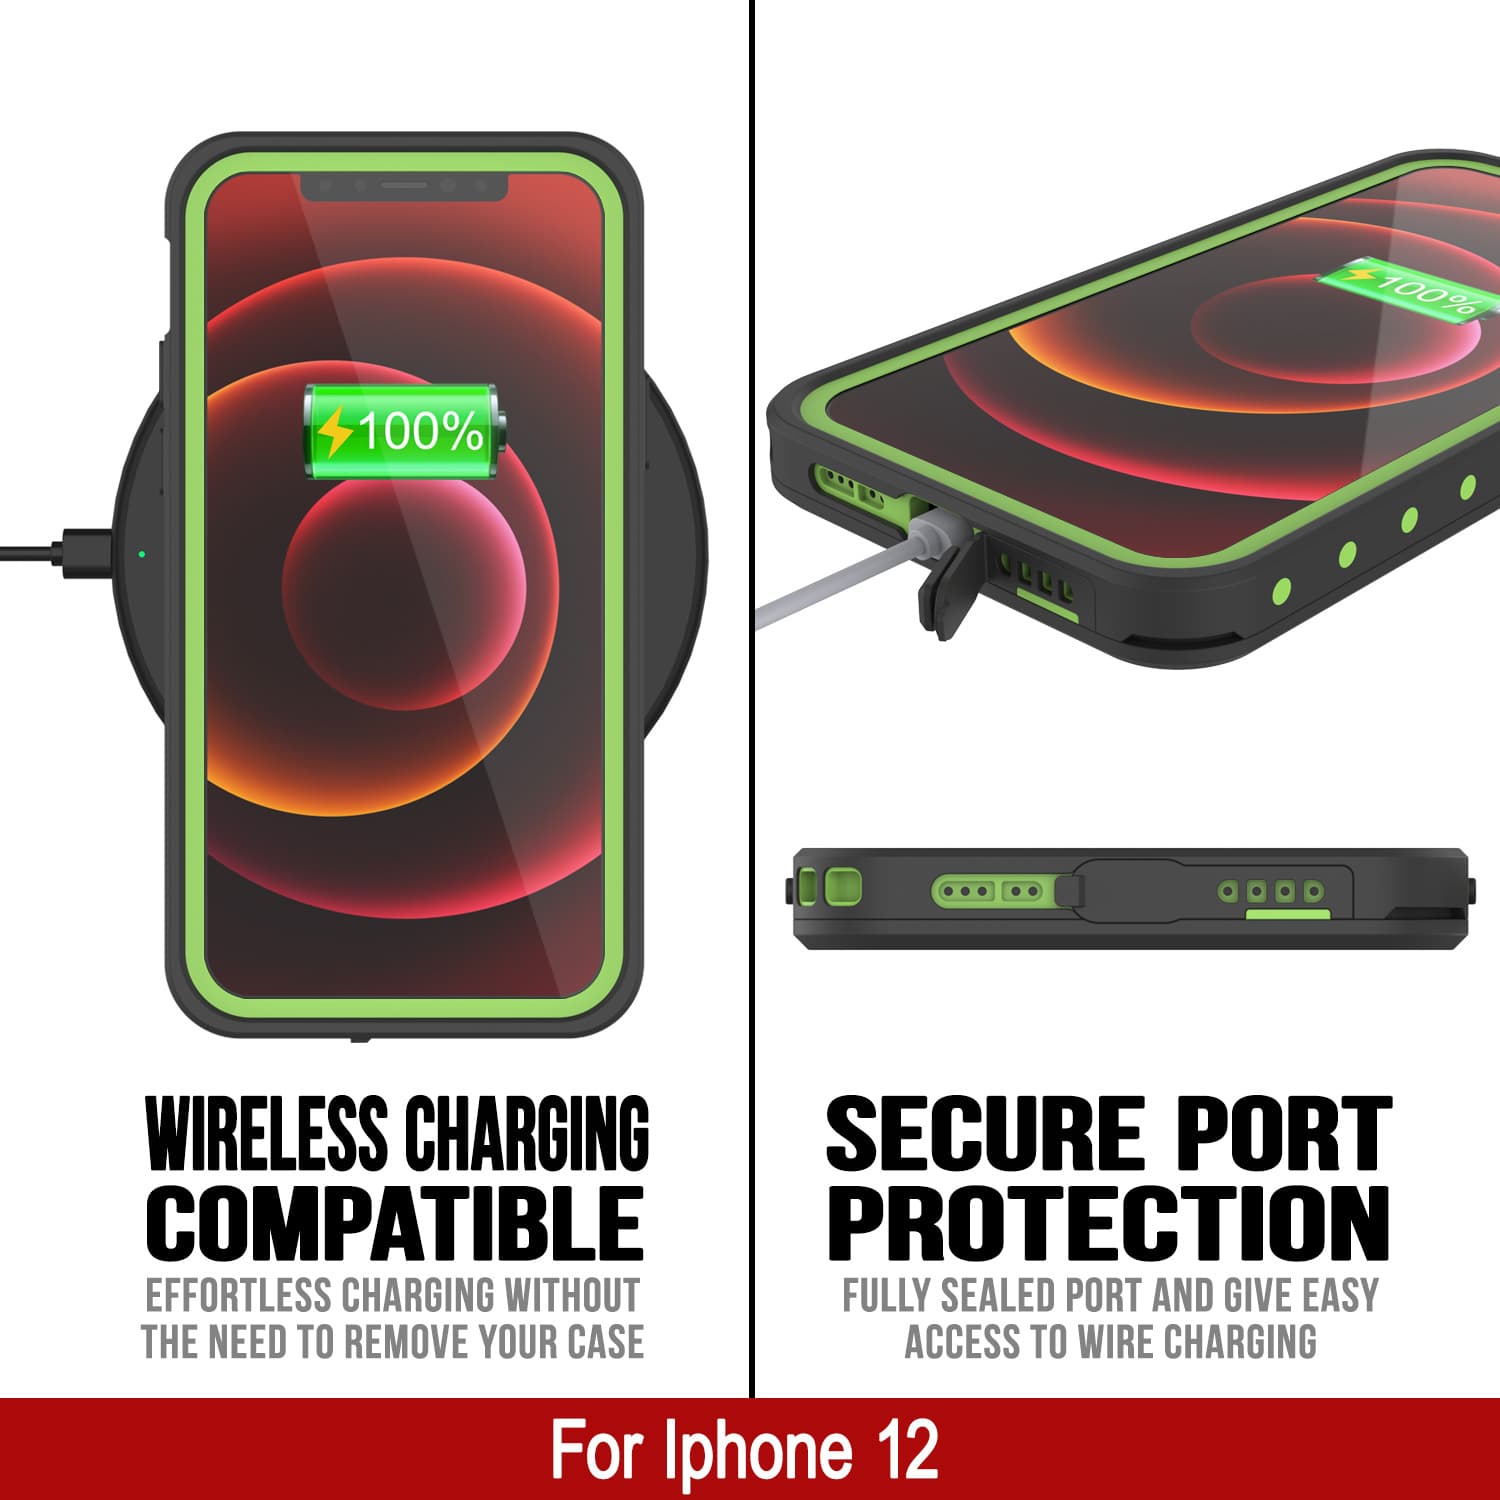 iPhone 12 Waterproof IP68 Case, Punkcase [Light green] [StudStar Series] [Slim Fit] [Dirtproof]